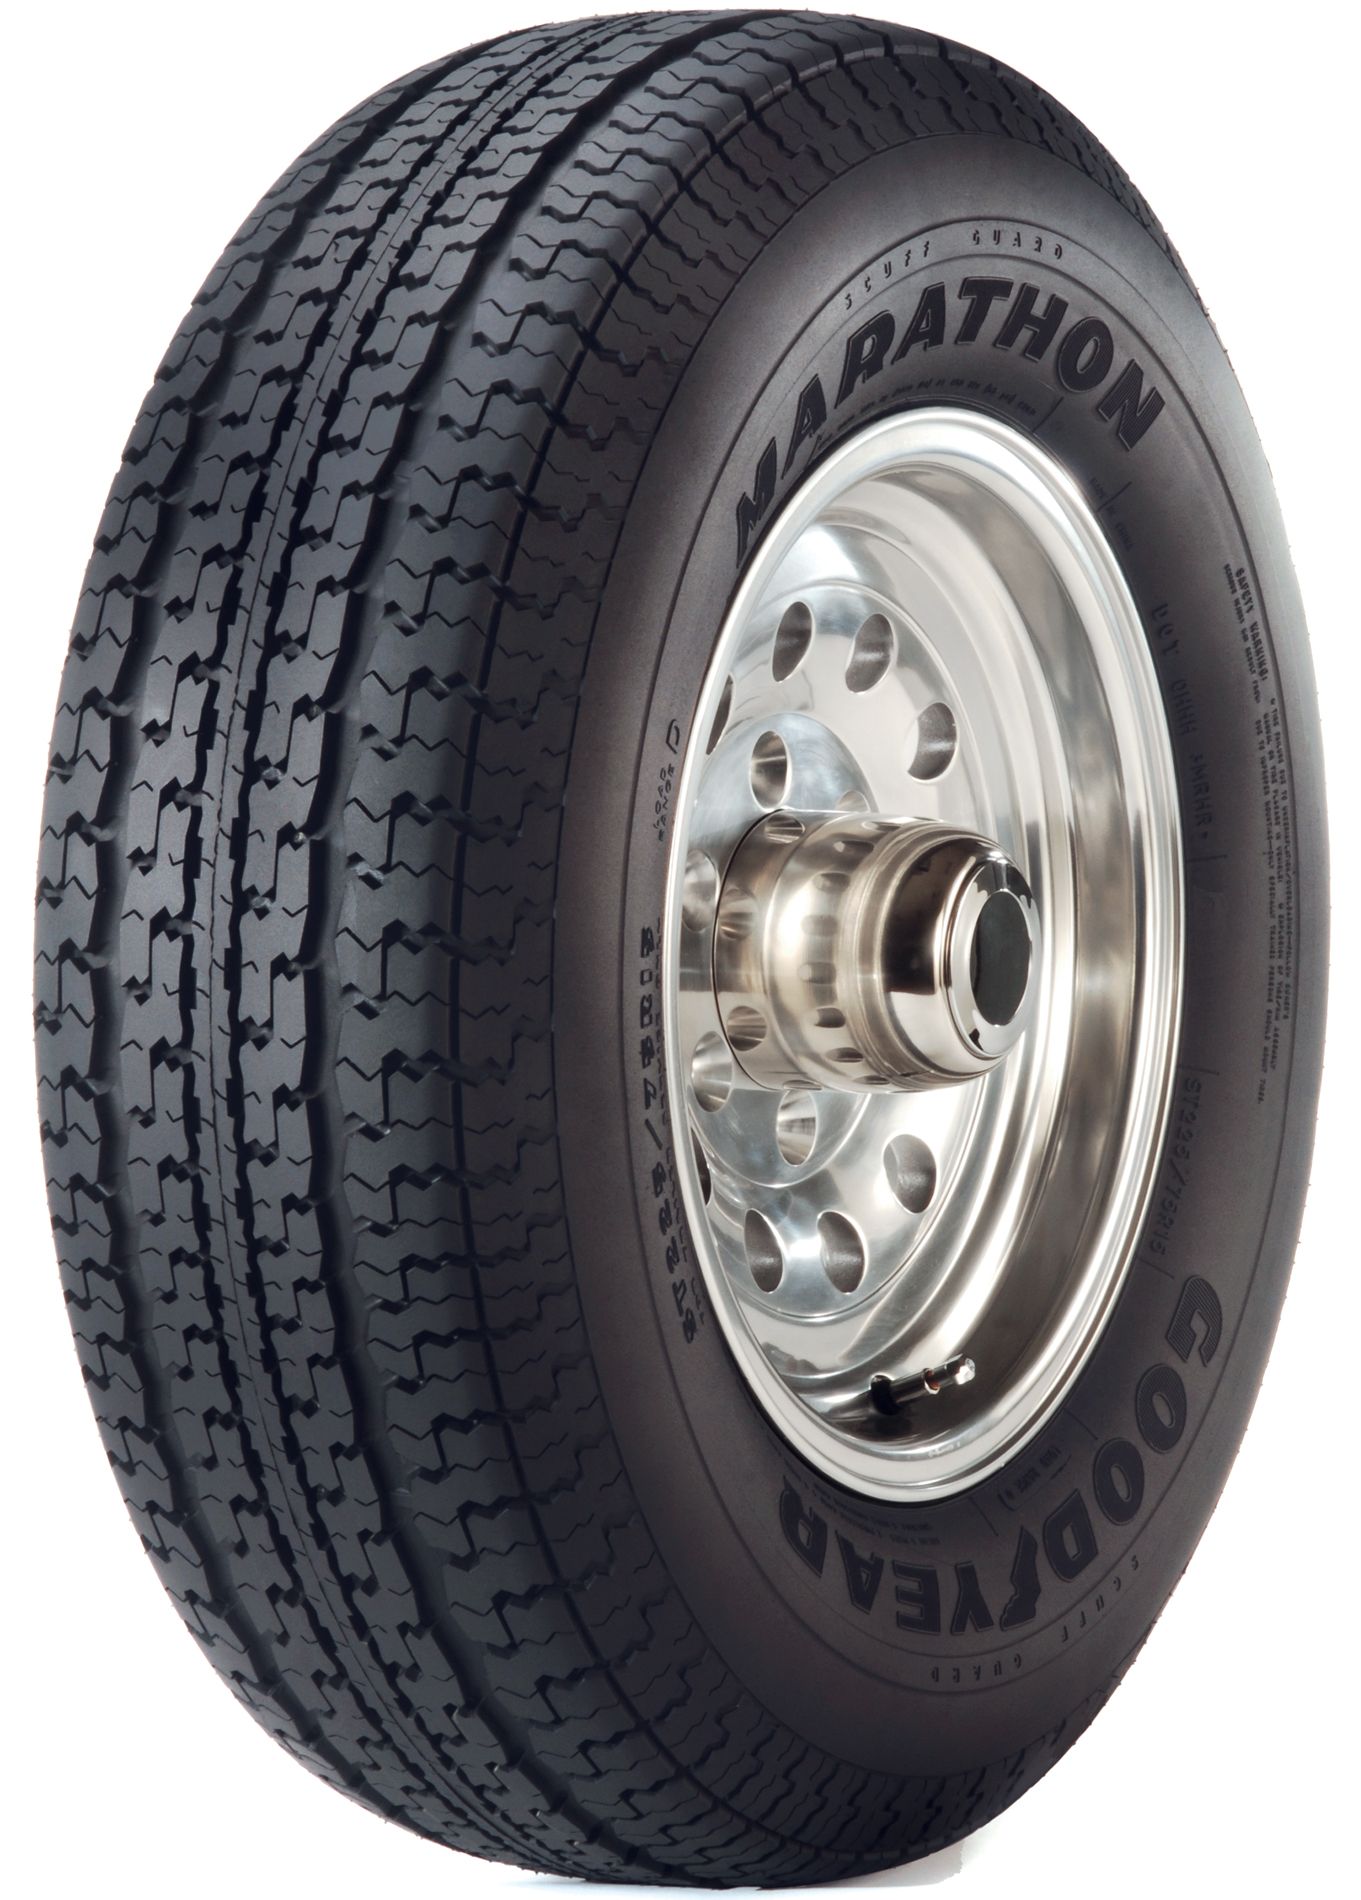 Goodyear MARATHON Tire - 215/75R14 0 BSW1361 x 1900